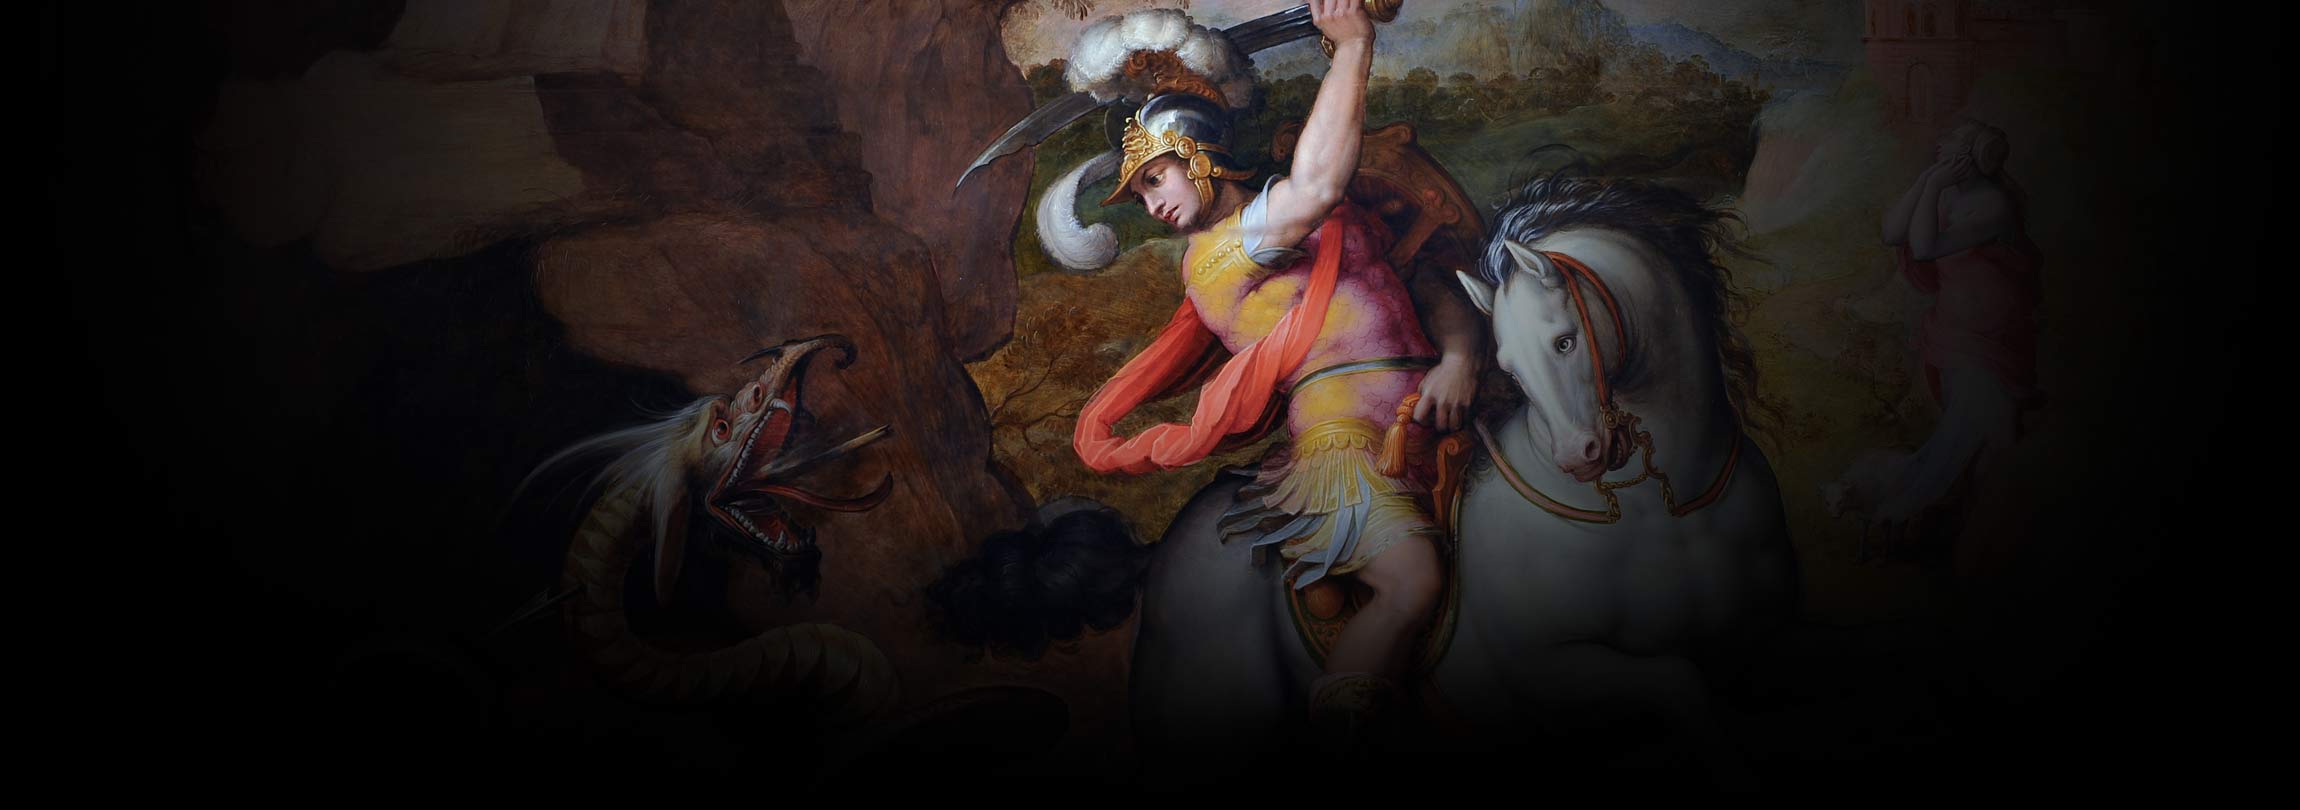 Por que São Jorge é retratado derrotando um dragão?